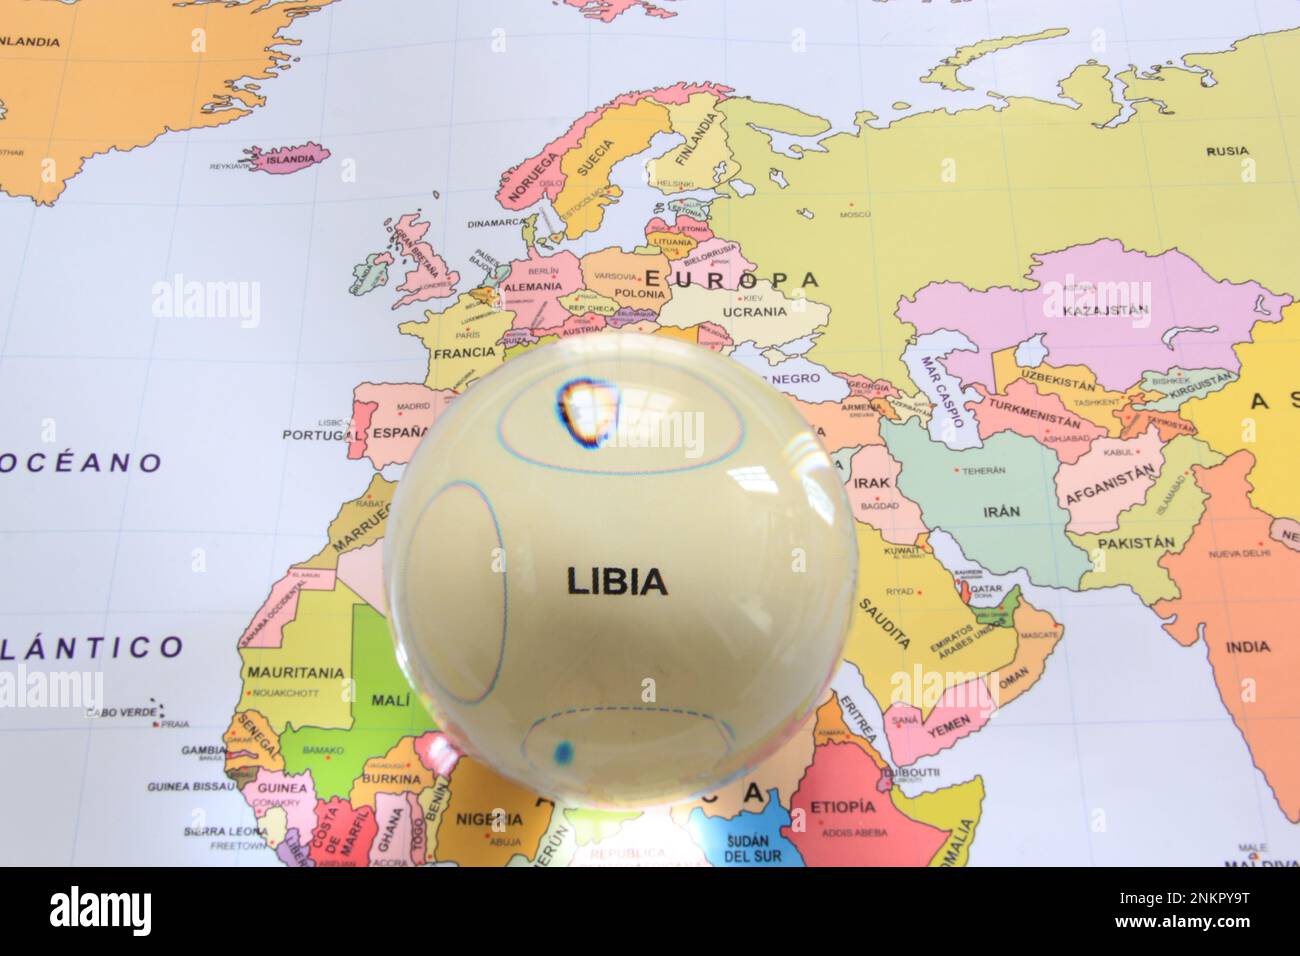 Boule de cristal sur une carte du monde qui met en évidence un pays pour le mettre en évidence comme une loupe et de noter son importance économique et financière Libia Banque D'Images